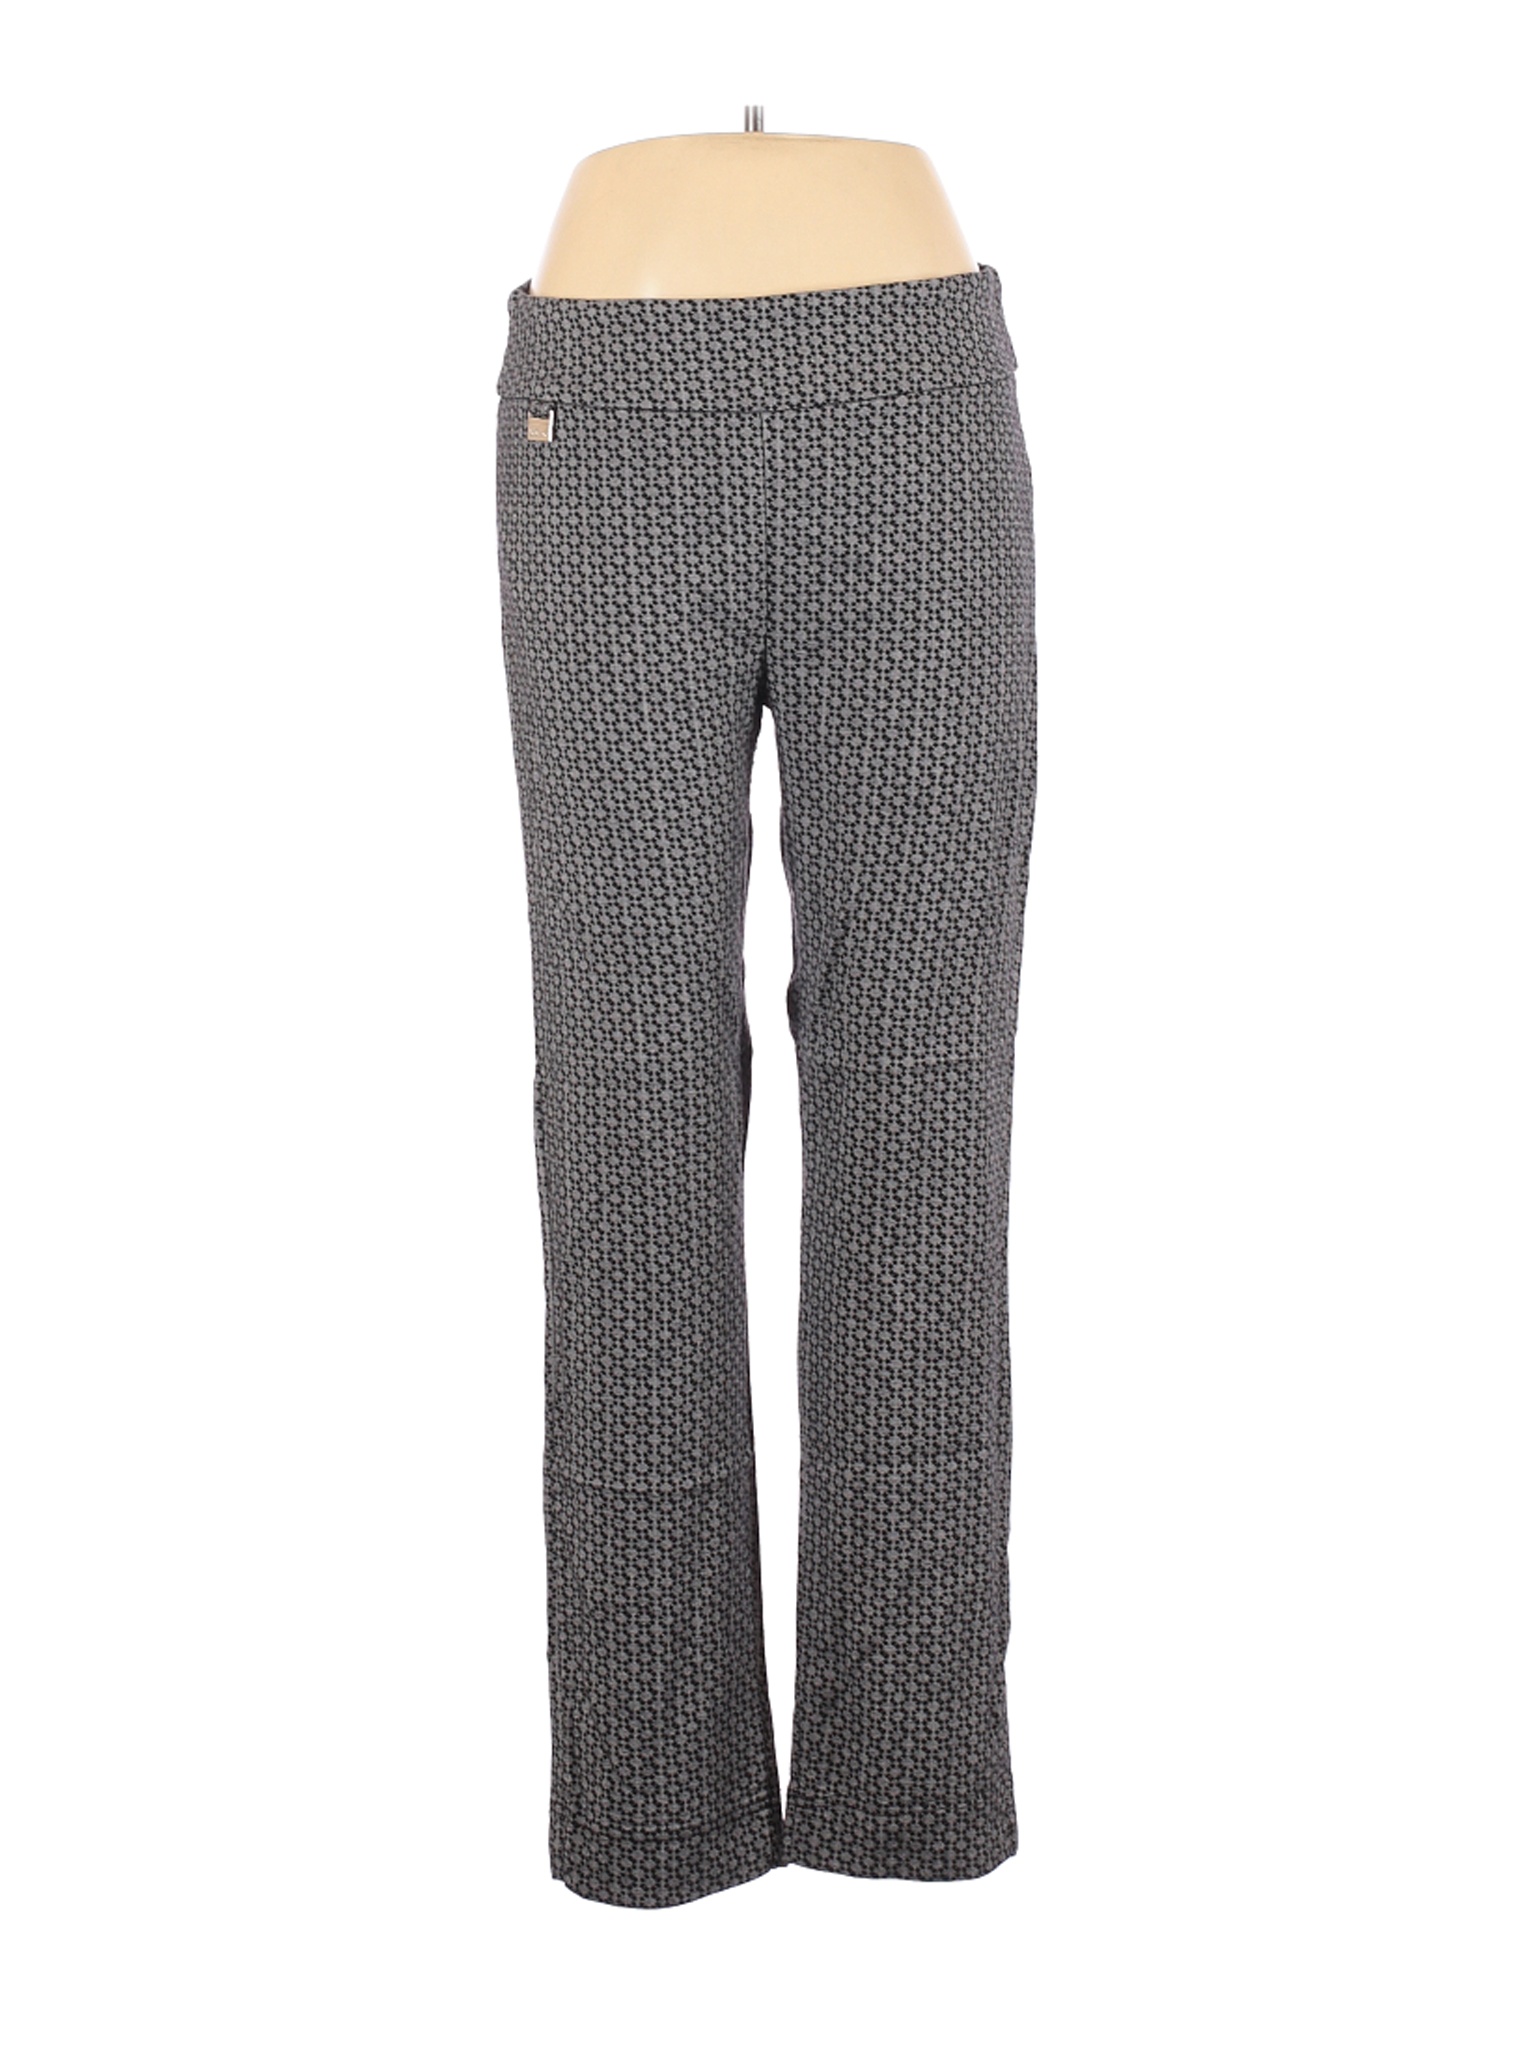 Lulu-B Women Gray Casual Pants 14 | eBay